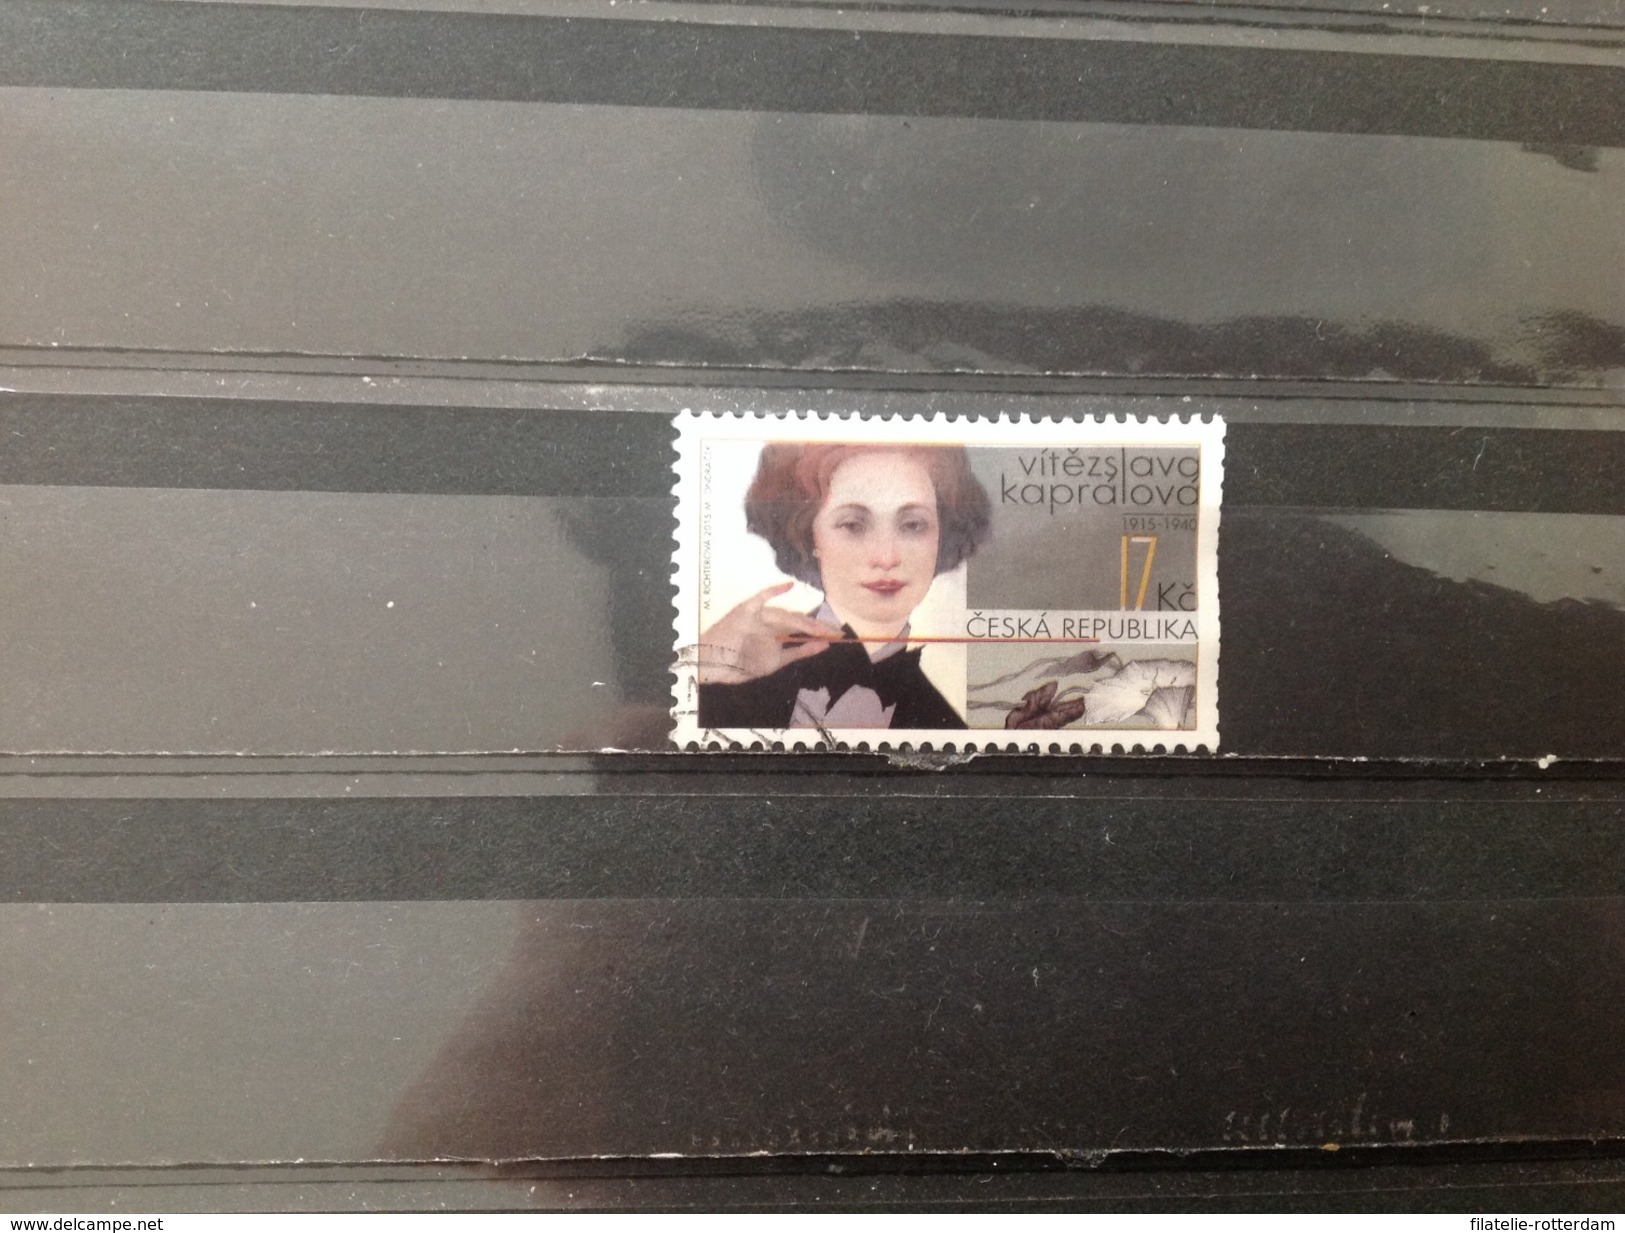 Tsjechië / Czech Republic - Vitezslava Kapralova (17) 2015 - Used Stamps